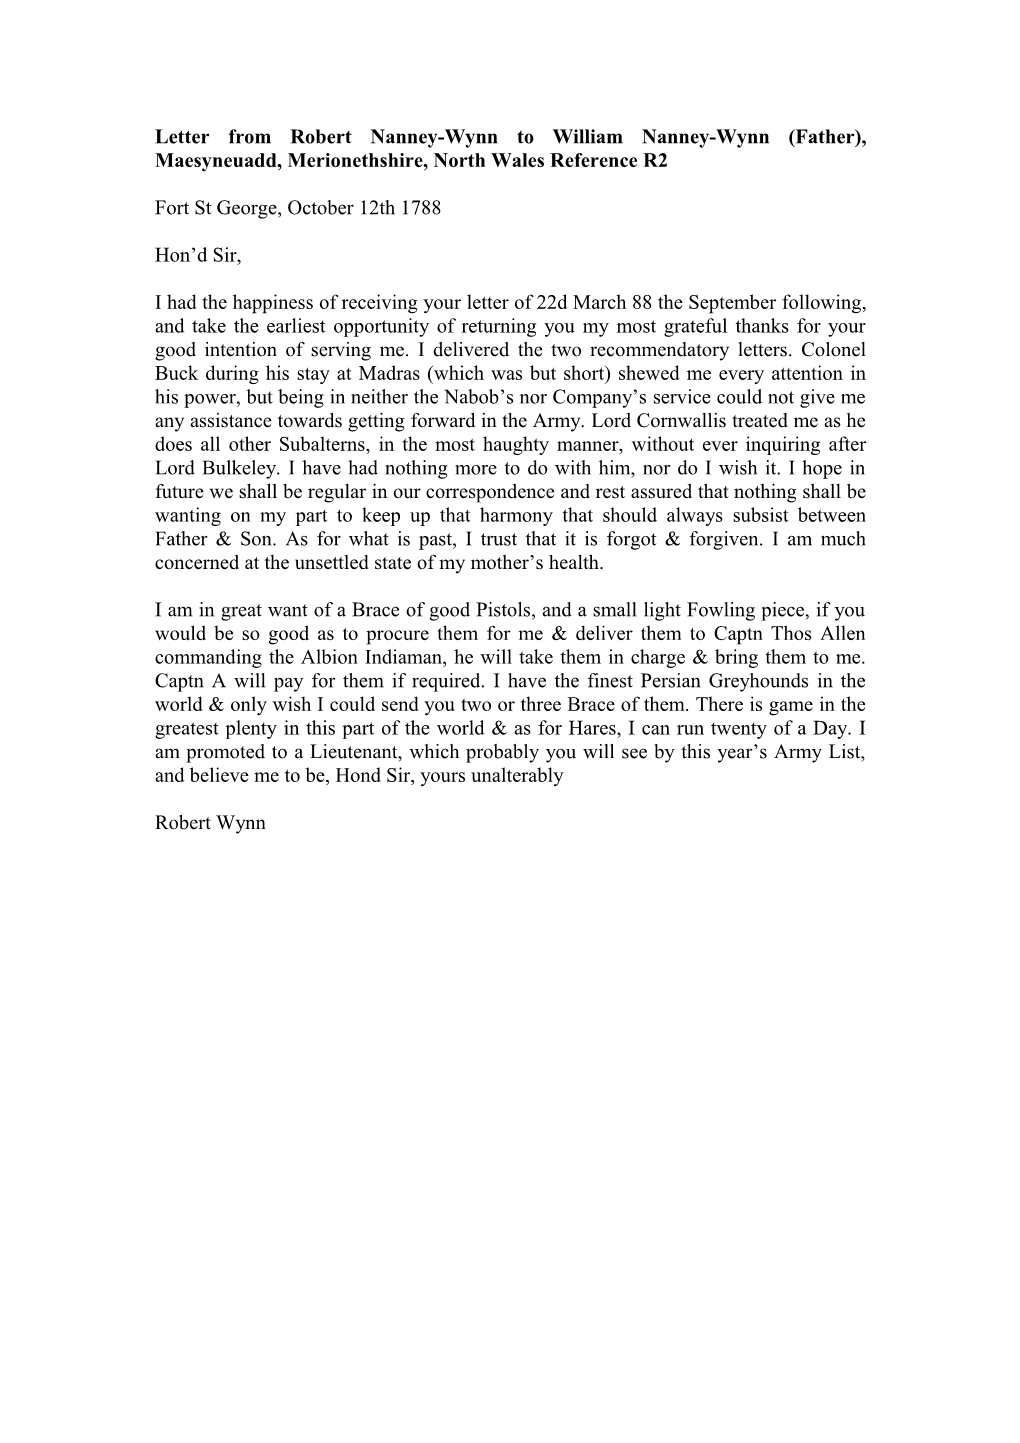 Letter from Robert Nanney-Wynn to William Nanney-Wynn (Father), Maesyneuadd, Merionethshire